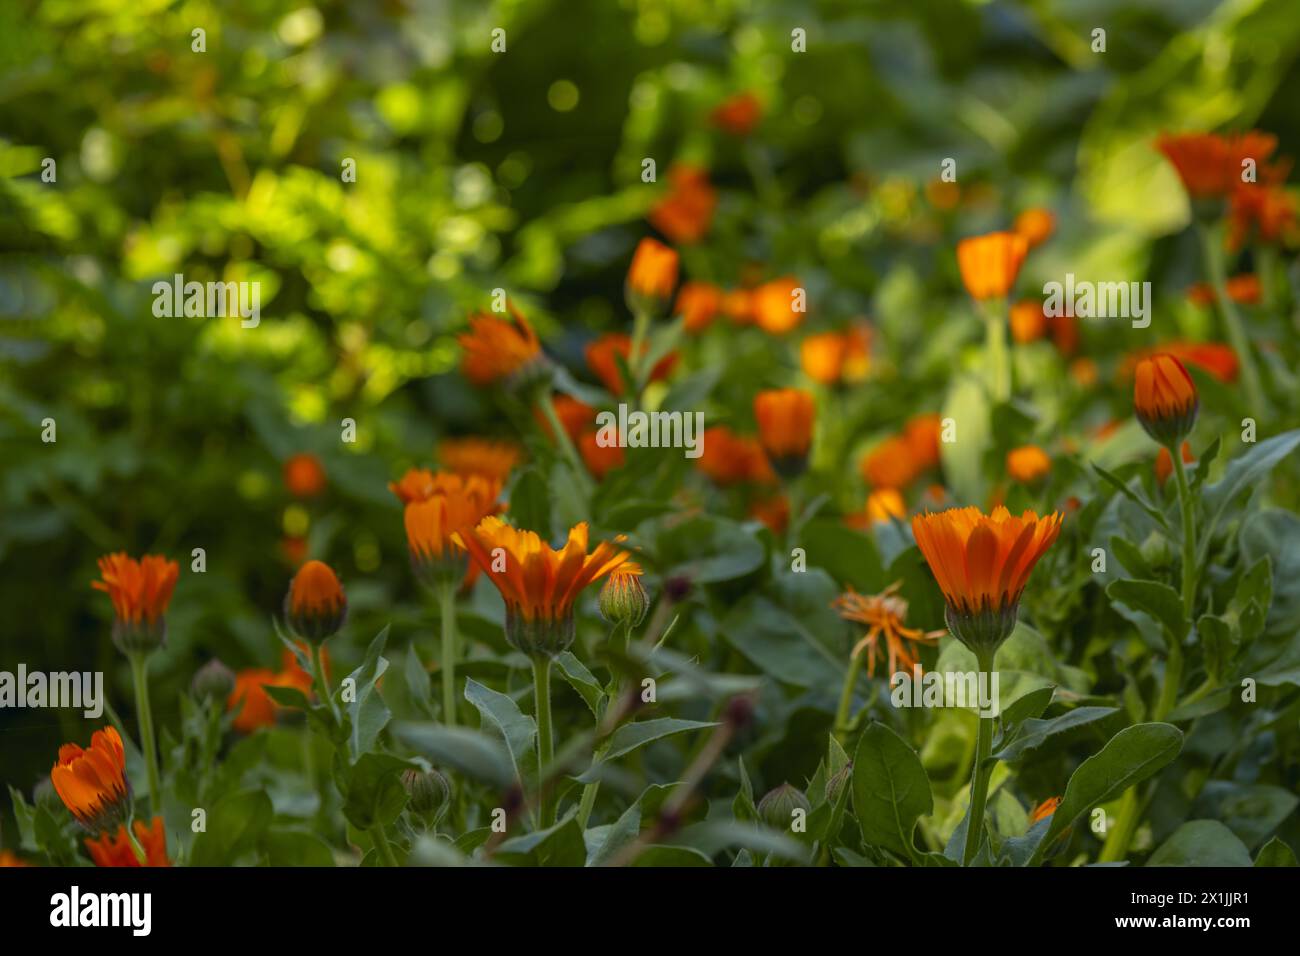 Piccoli fiori d'arancio con steli dritti che aprono i loro petali all'inizio della giornata in un campo pieno di verde tra ombre e raggi di sole Foto Stock